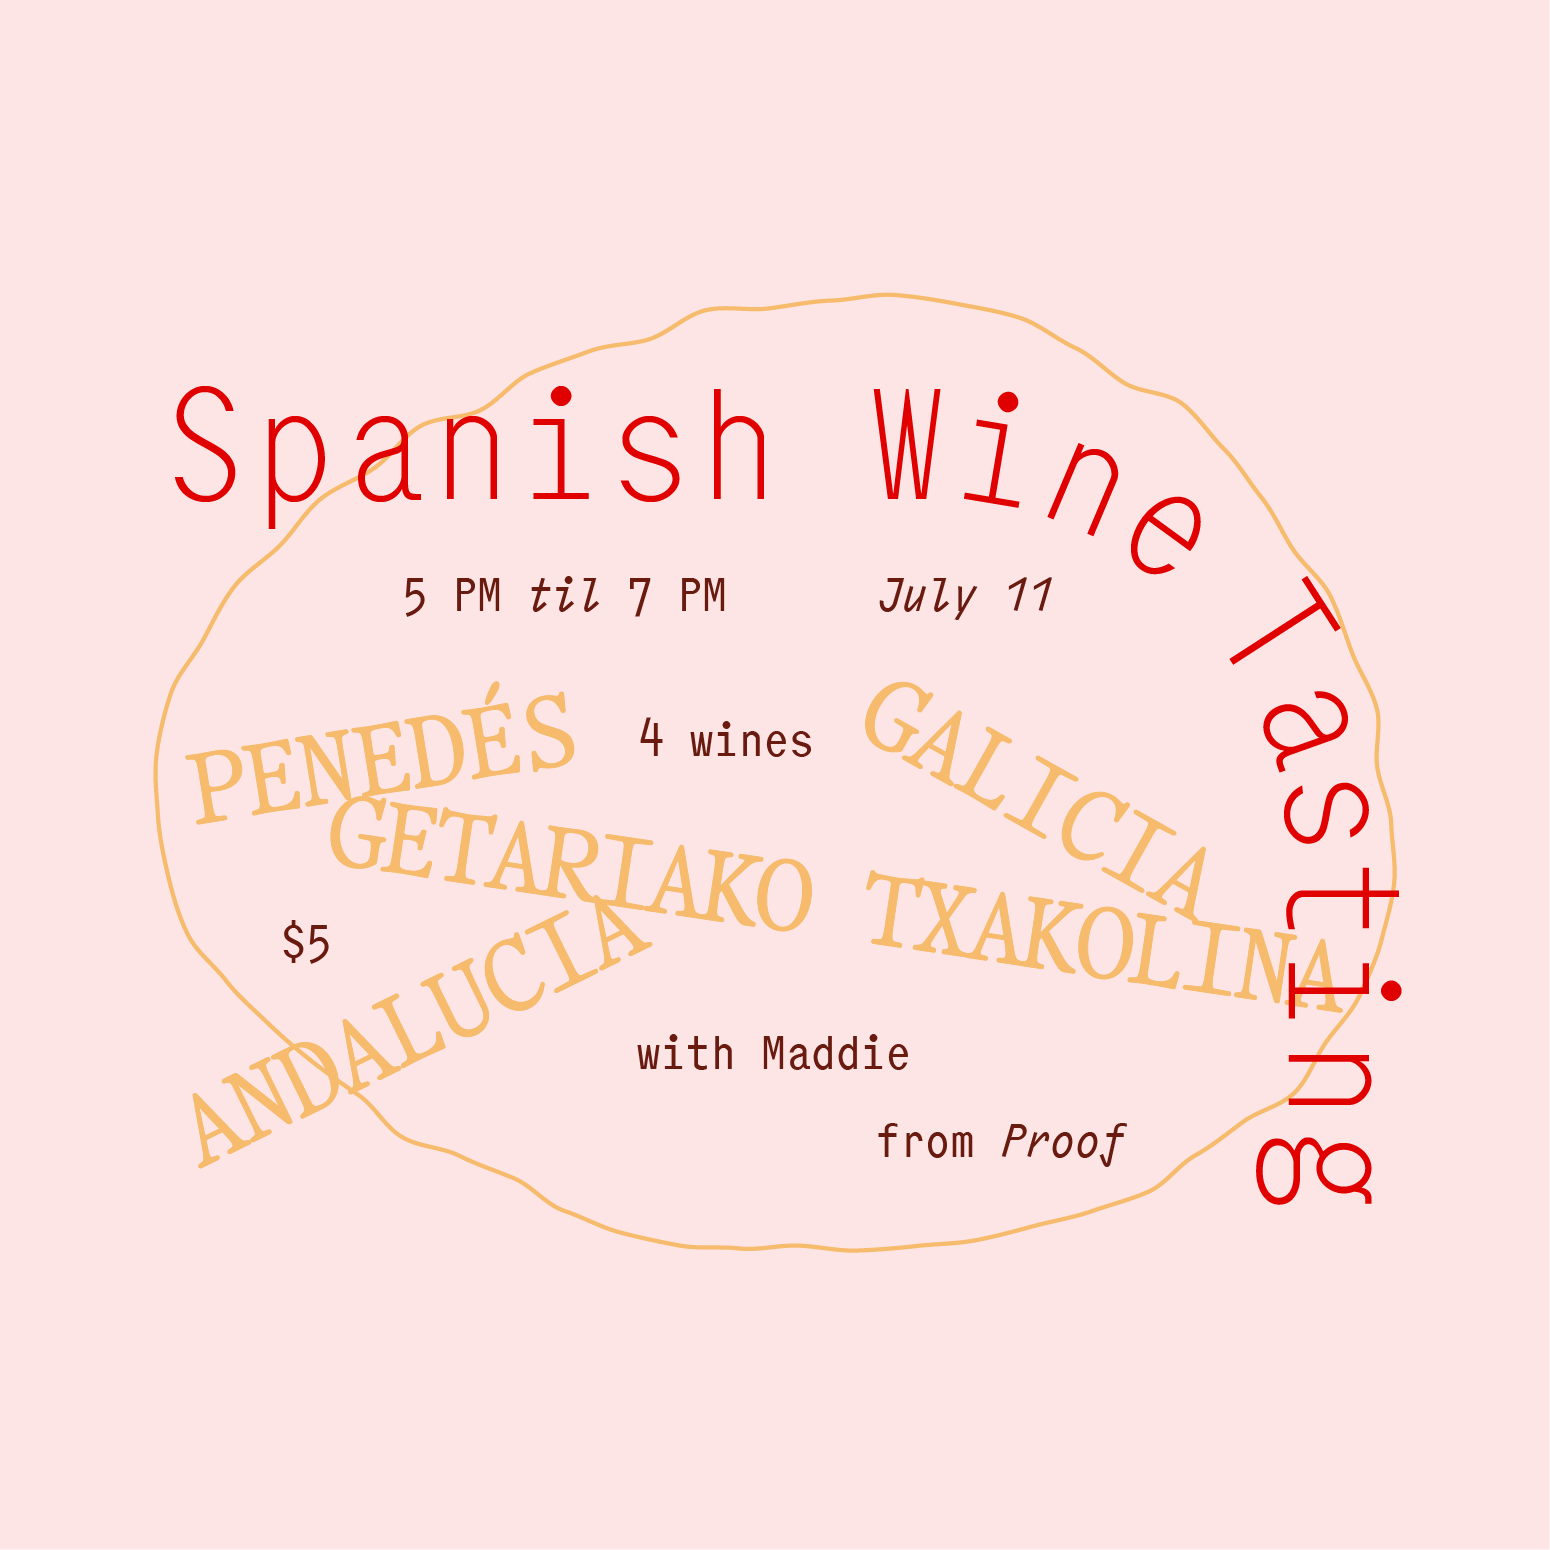 SPANISH WINE TASTING